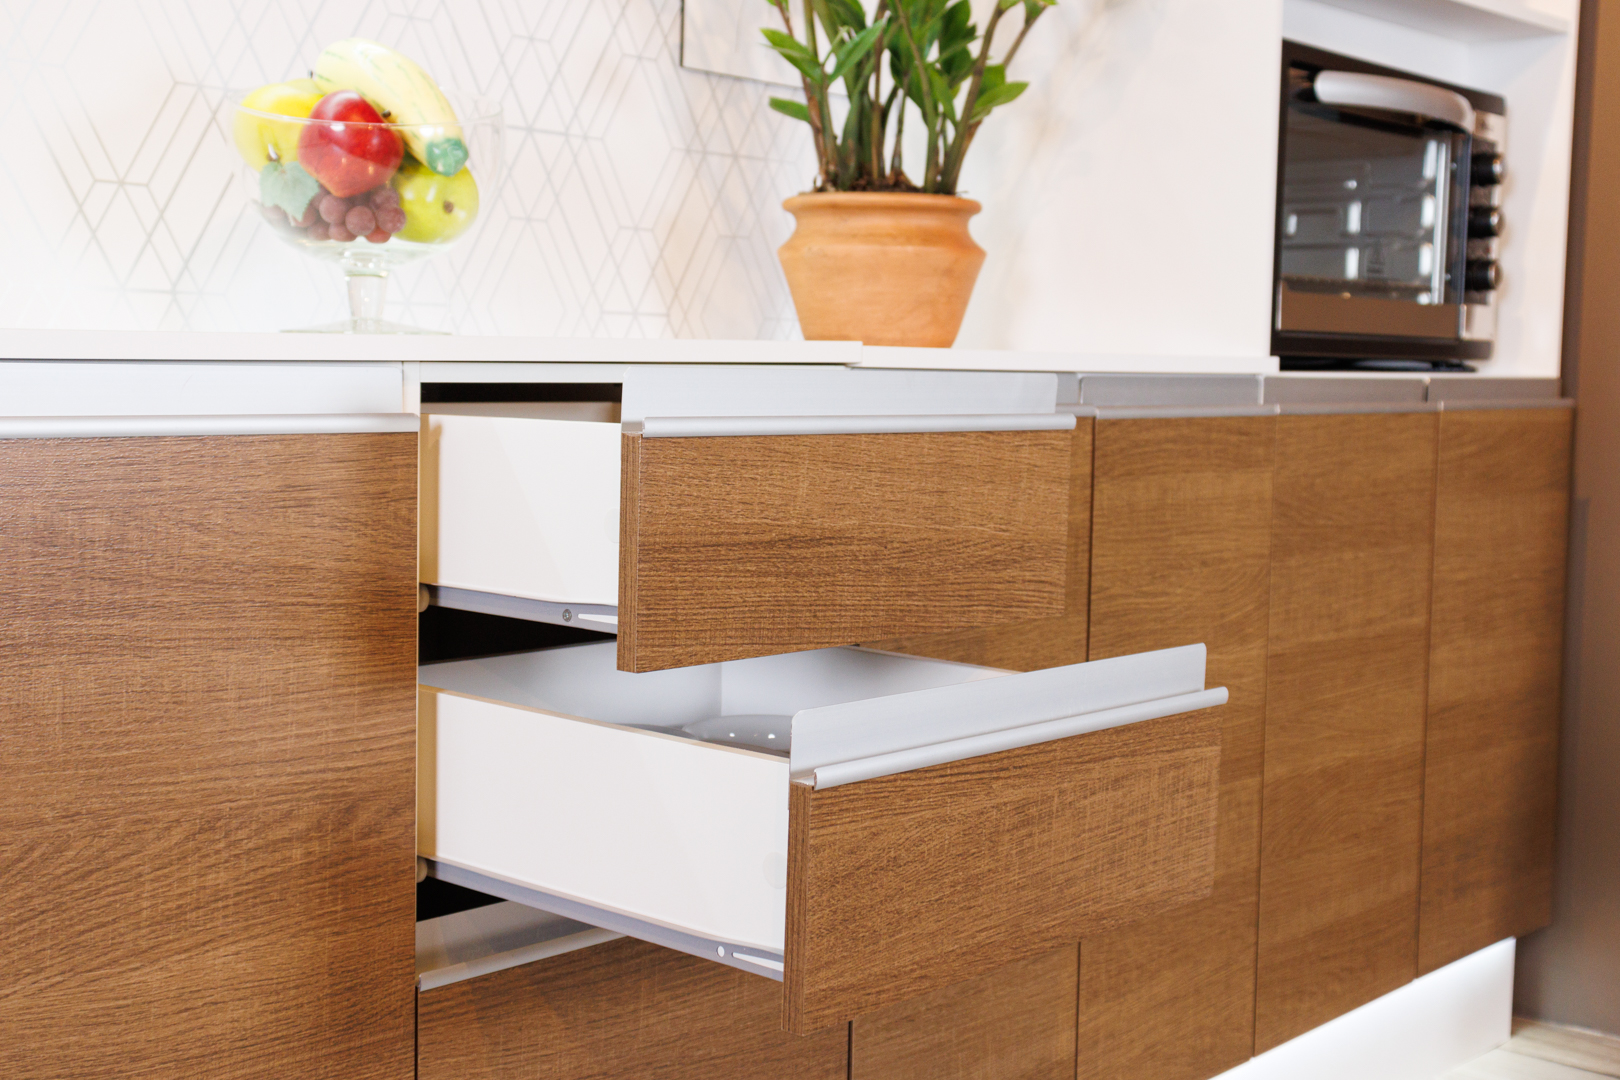 Imagem interna de um armário de cozinha em cor de madeira. Duas das gavetas estão levemente abertas, e em cima do balcão há flores e frutas